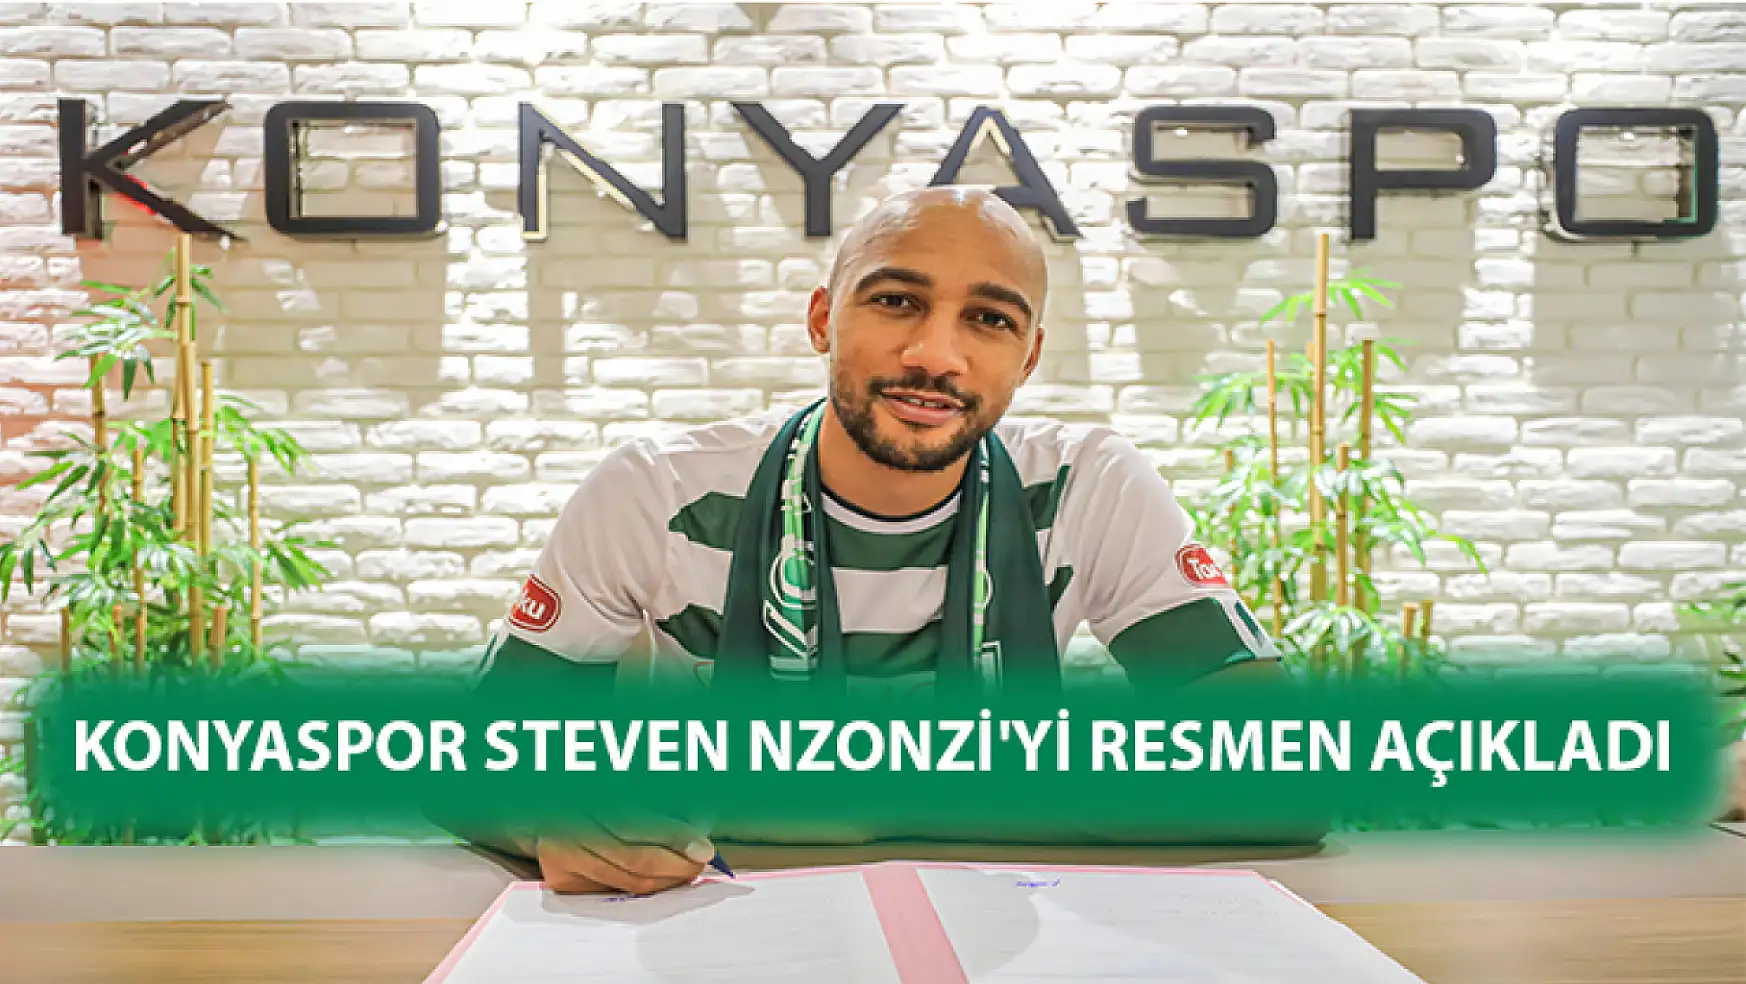 Konyaspor Steven Nzonzi'yi resmen açıkladı